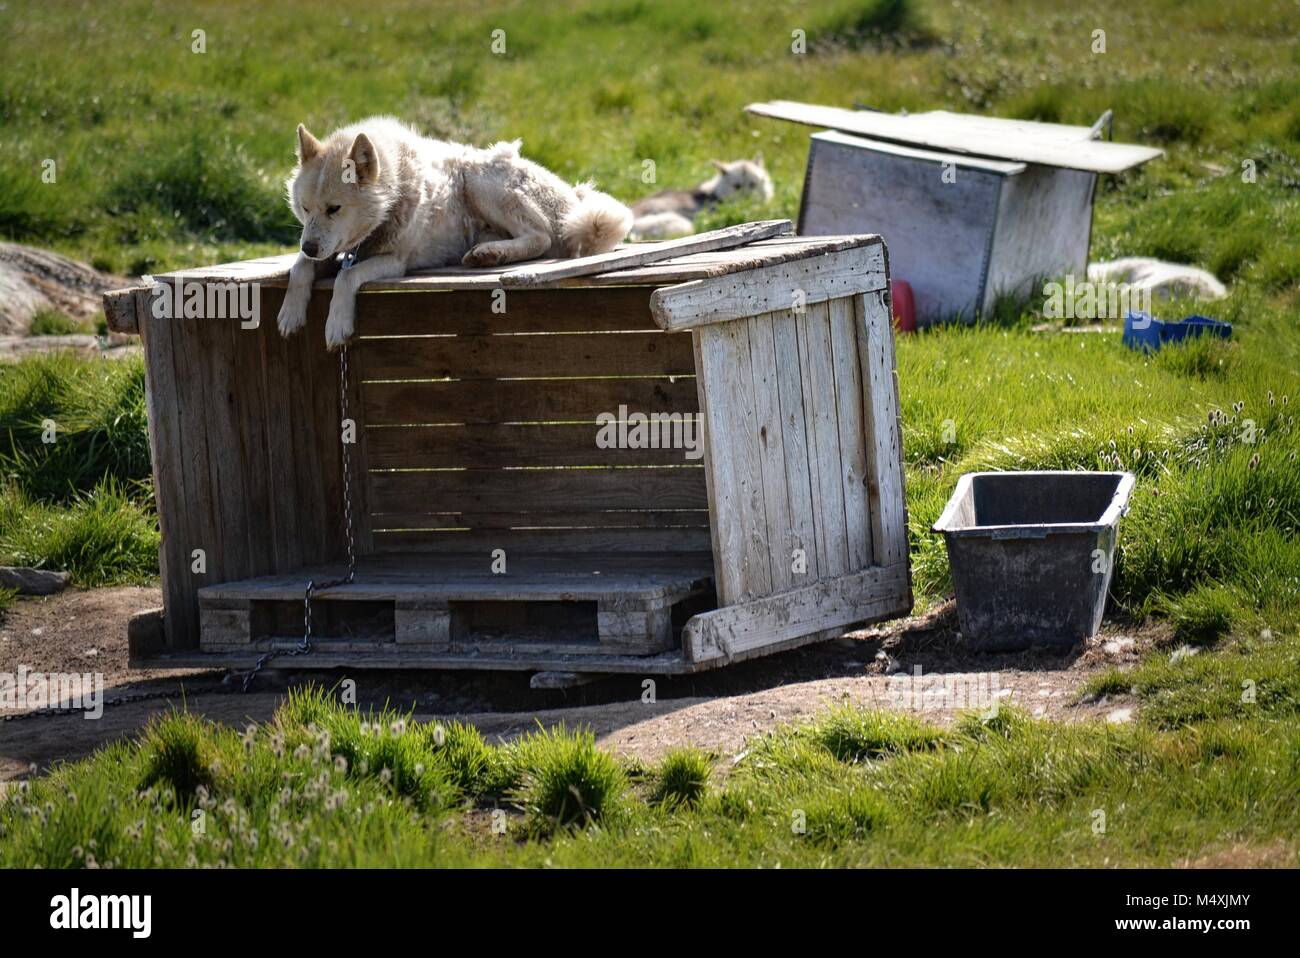 Groenlandia Huskies en Ilulissat, Groenlandia - perro gendoso encadenado esperando rexing en un día caluroso del verano en julio Foto de stock